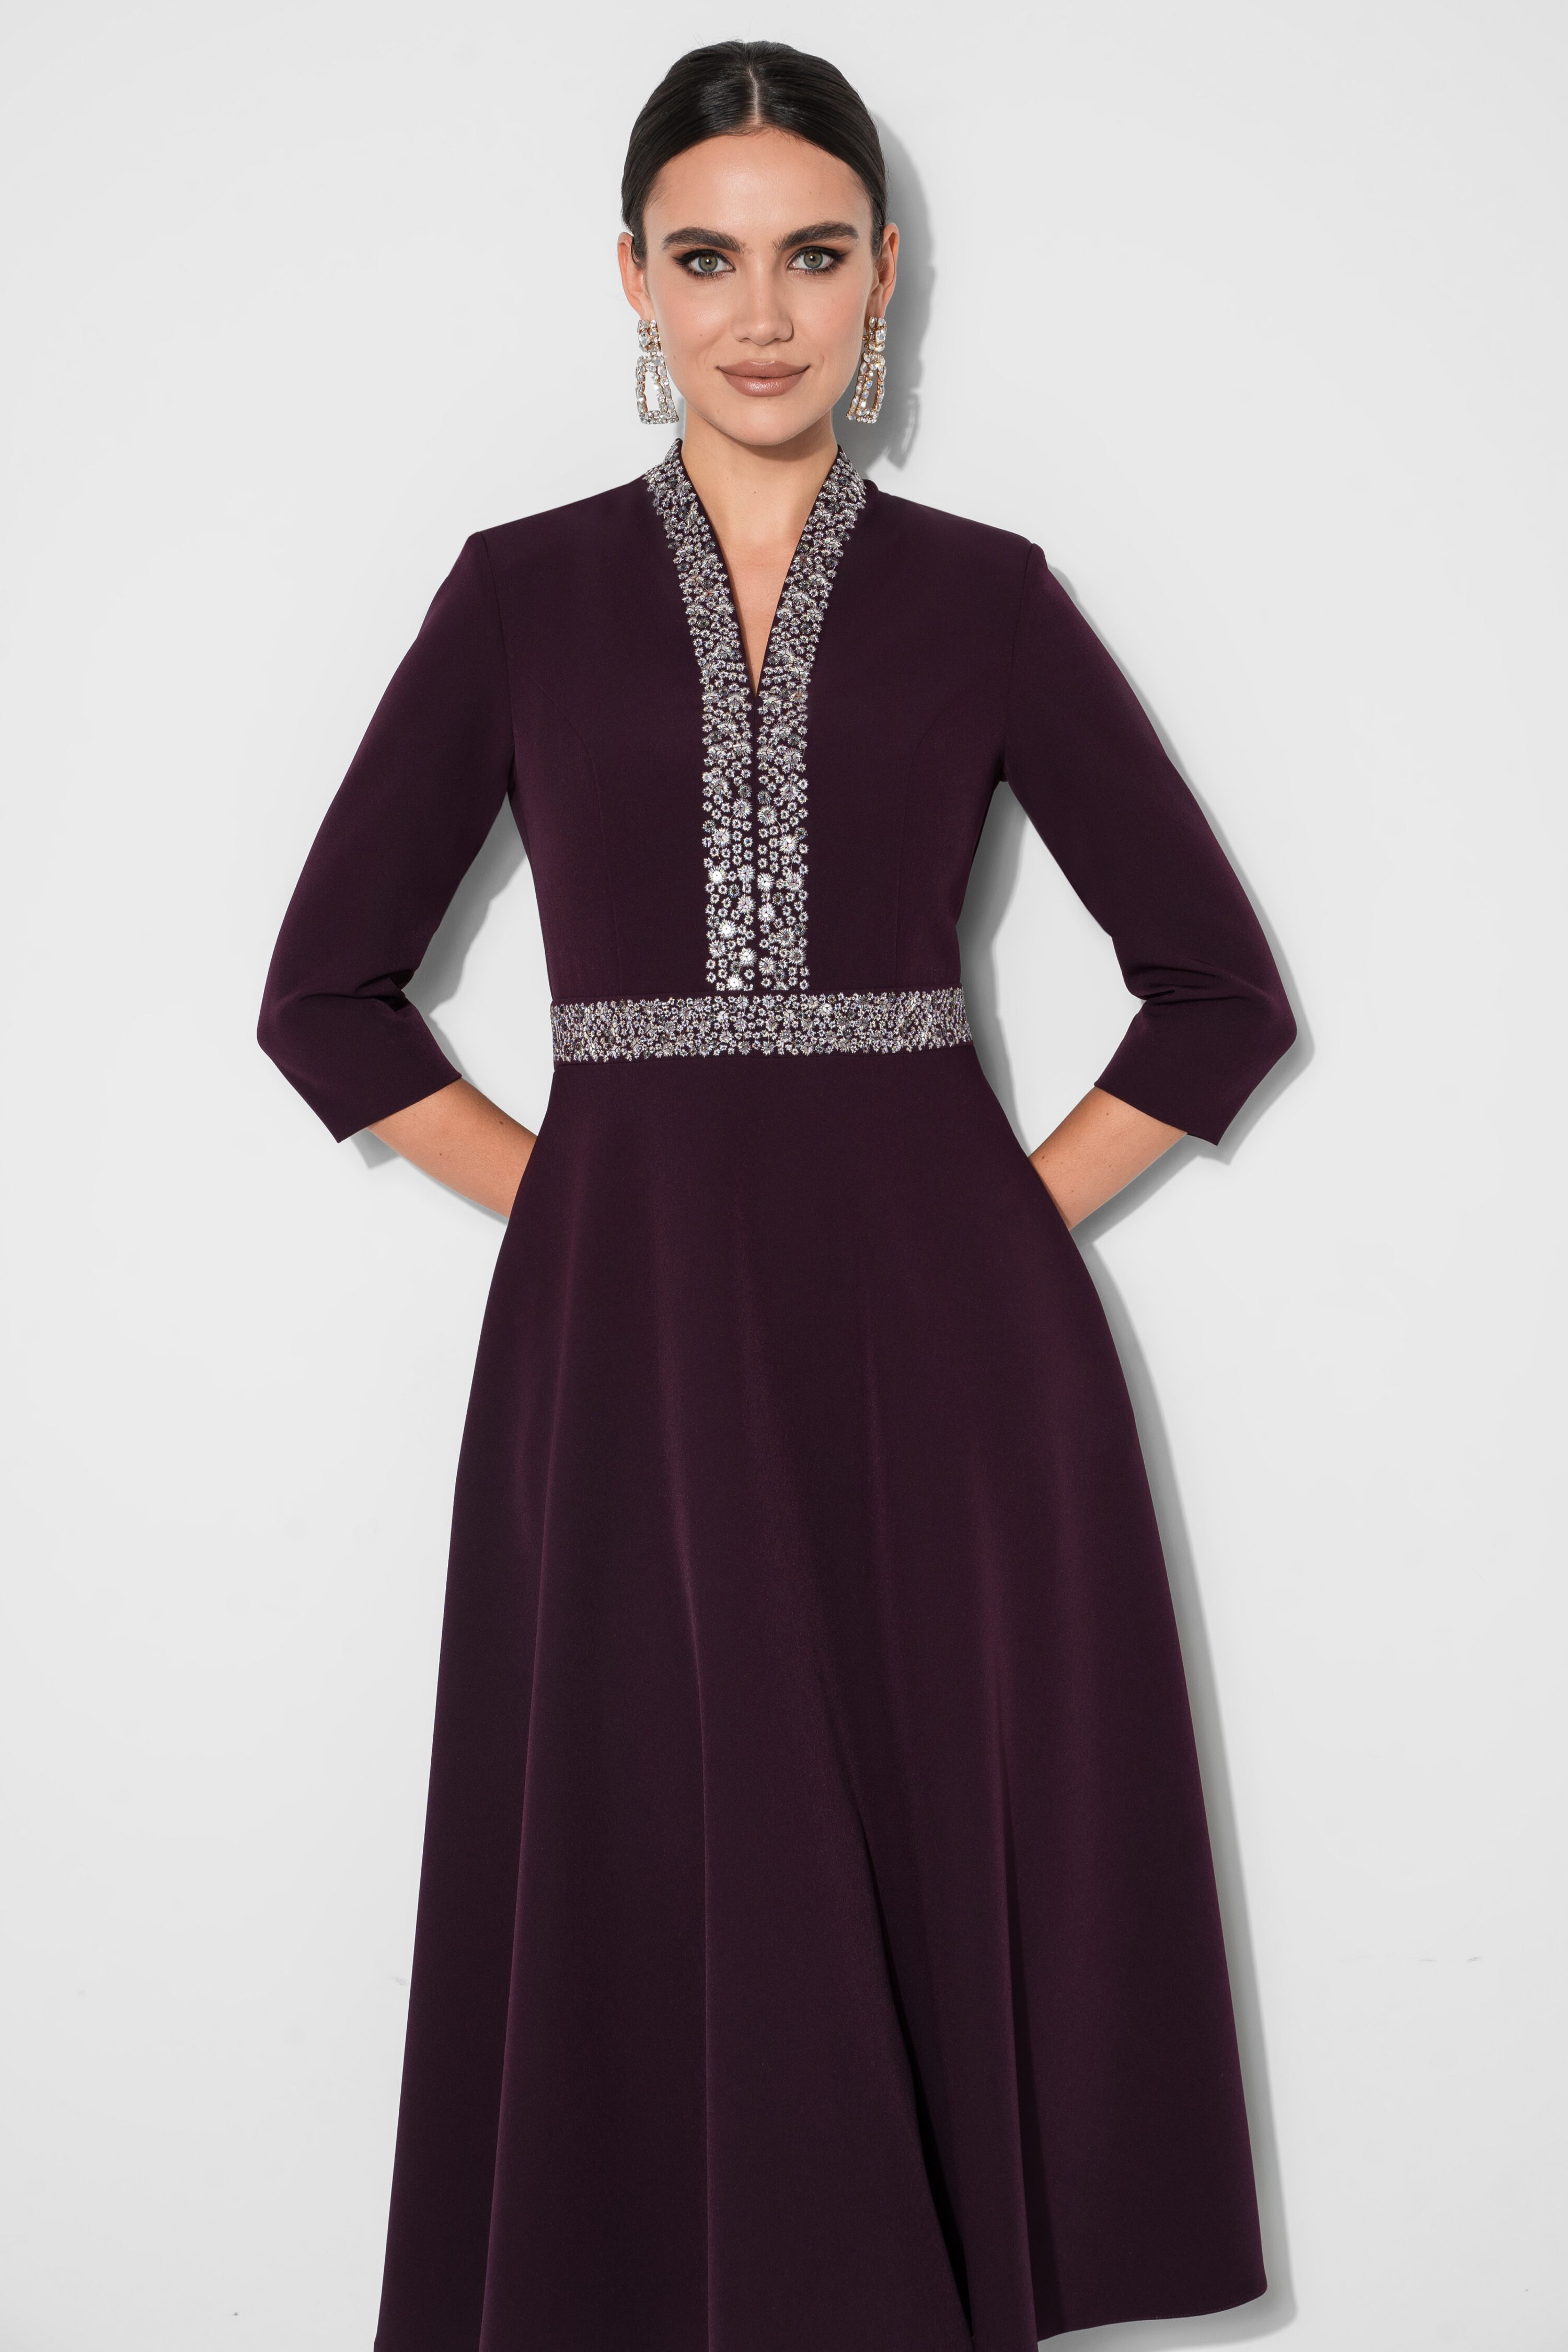 Купить платье URS 22-974-1 фиолетовое с вышивкой